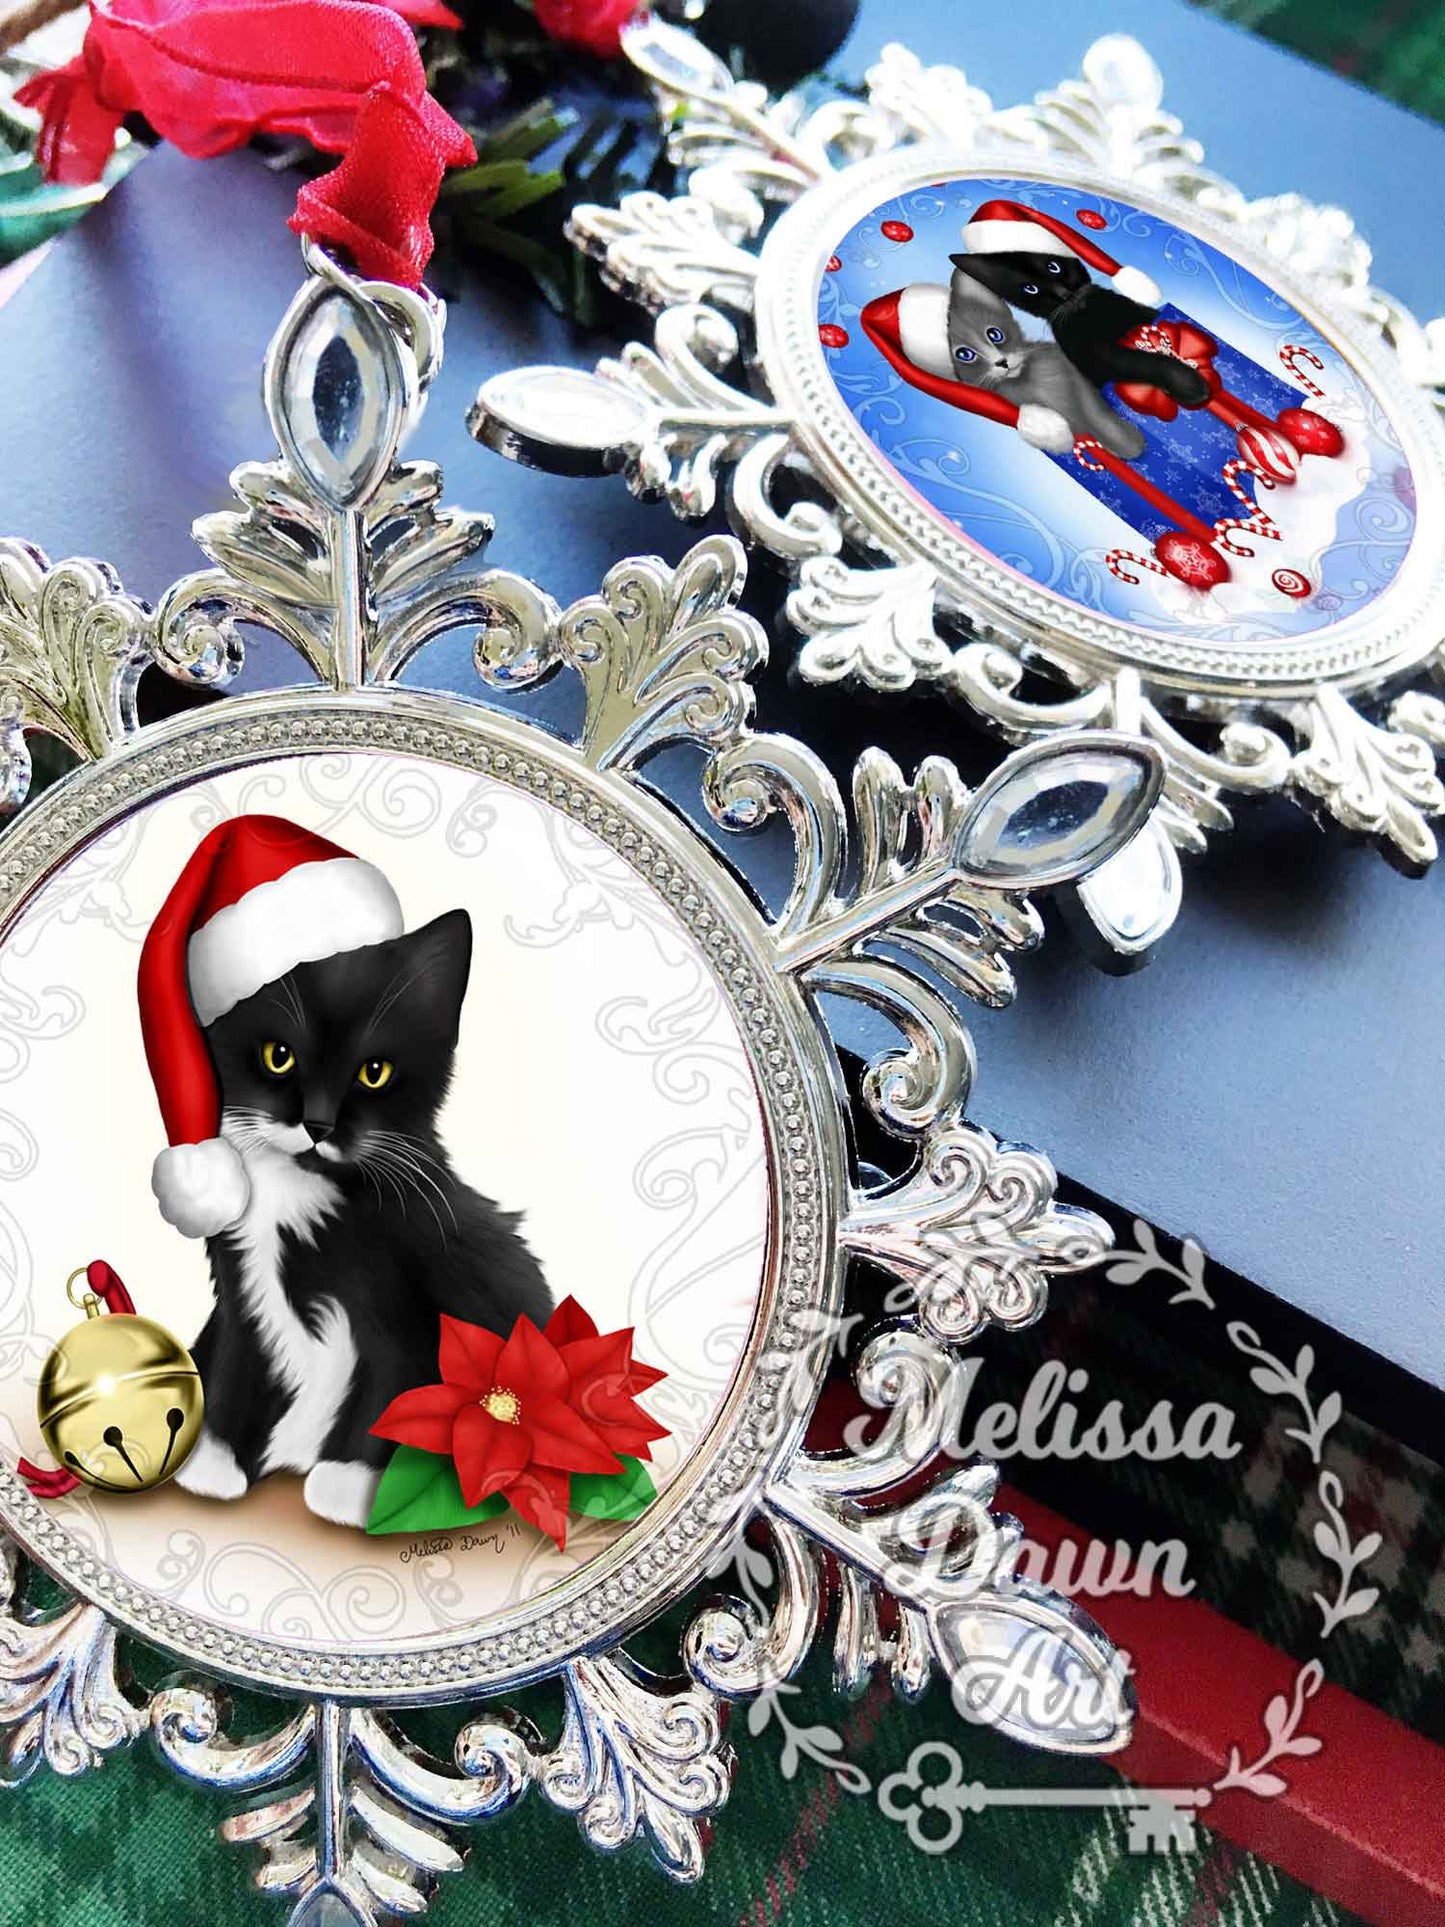 Rabbit Ornament/ Custom Bunny Ornament / Tea Ornament / Personalized Bunny Ornament / Dutch Bunny Ornament / Black White Bunny / Dutch Bunny